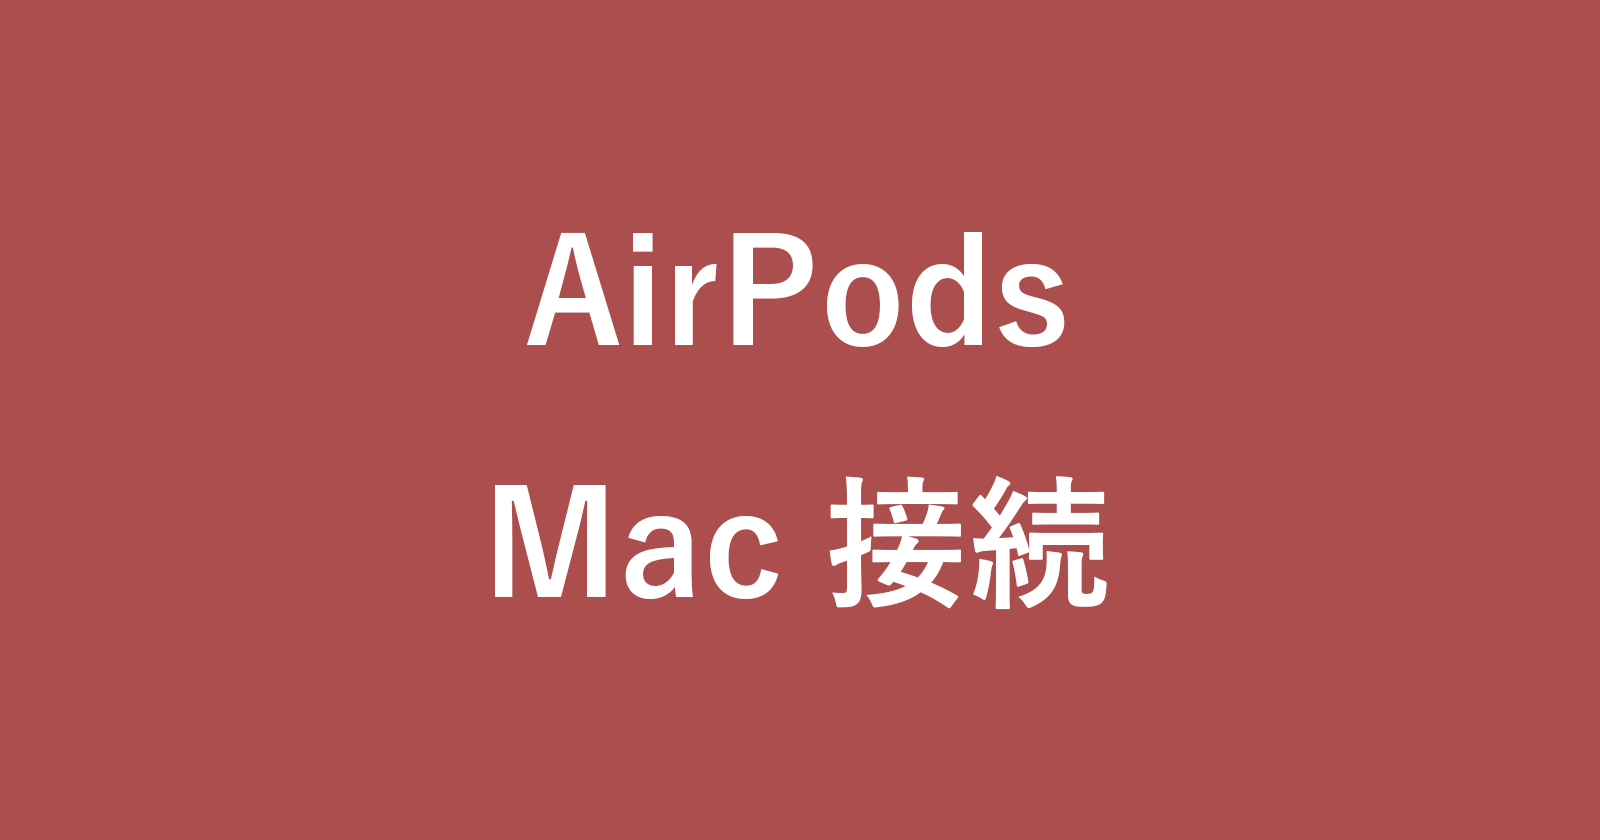 airpods mac pairing